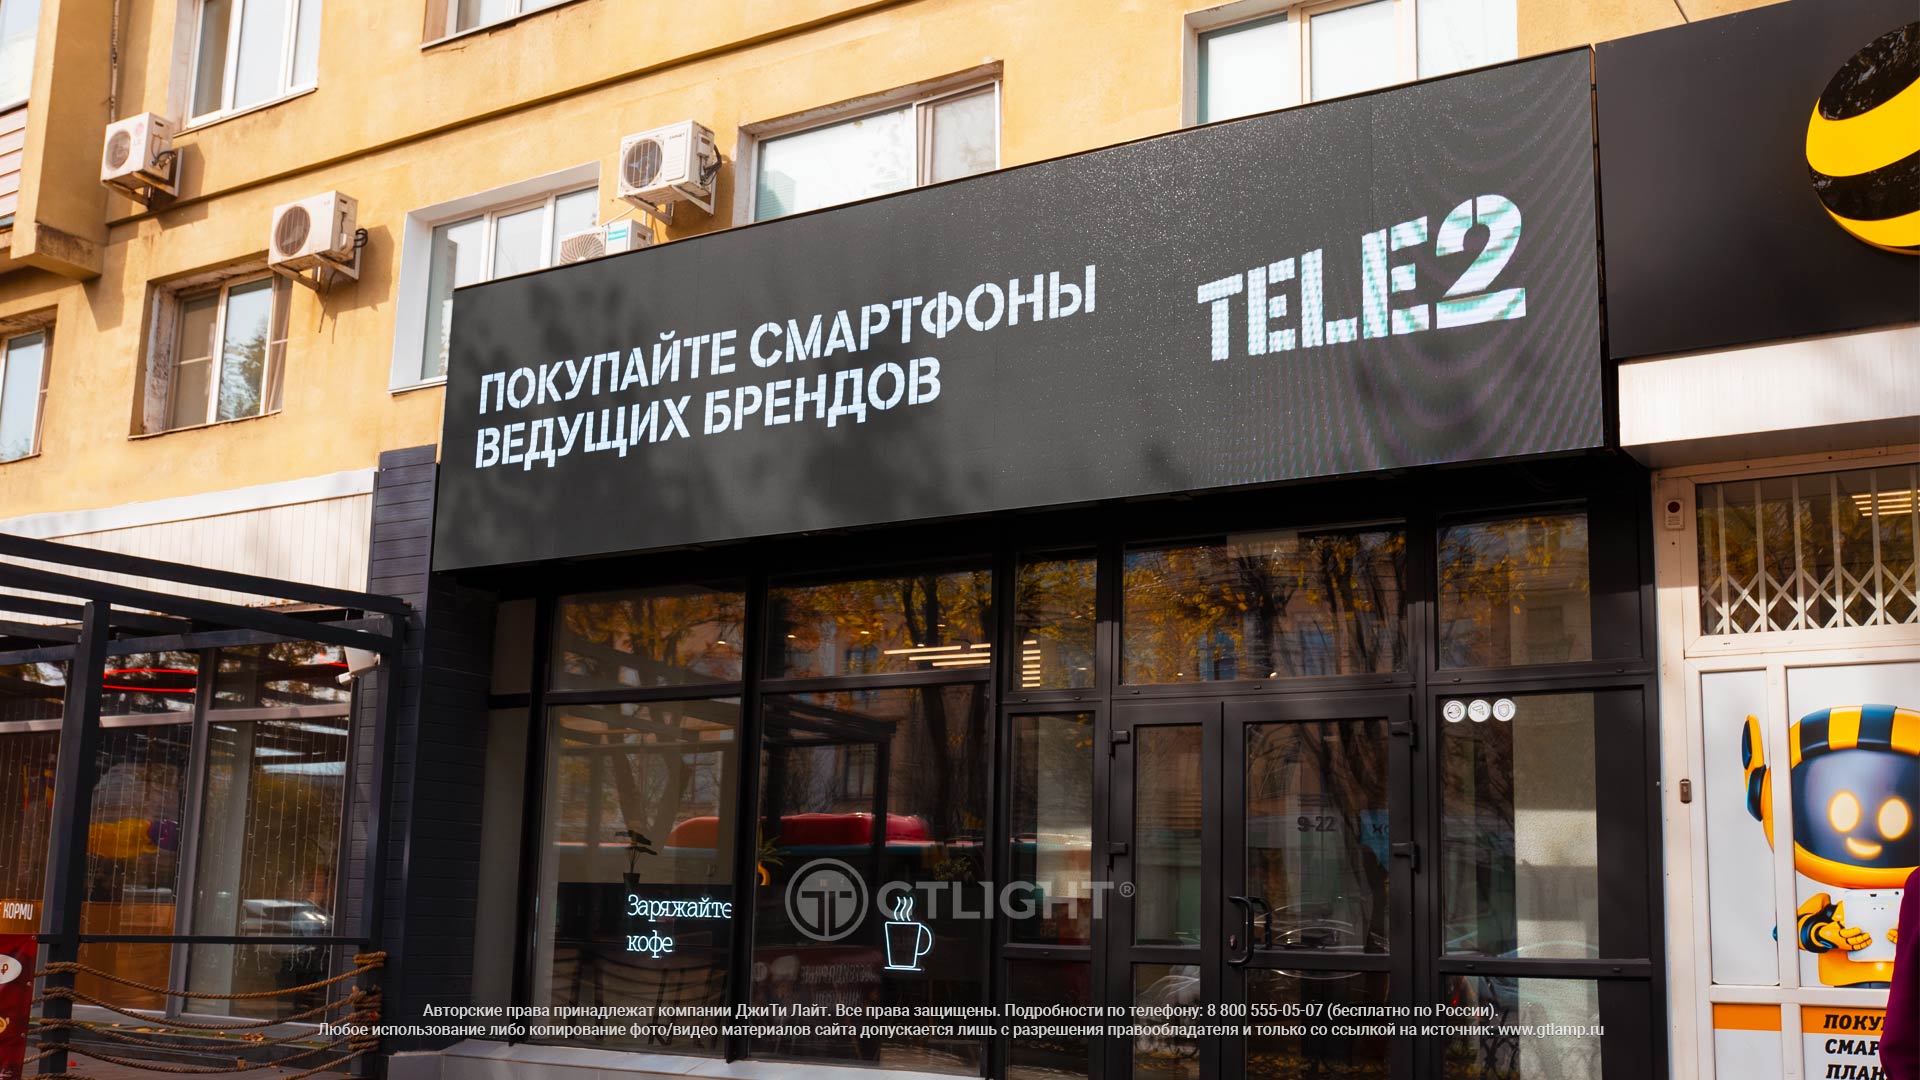 Светодиодный экран видео-вывеска, Хабаровск, «Tele2», фото 5